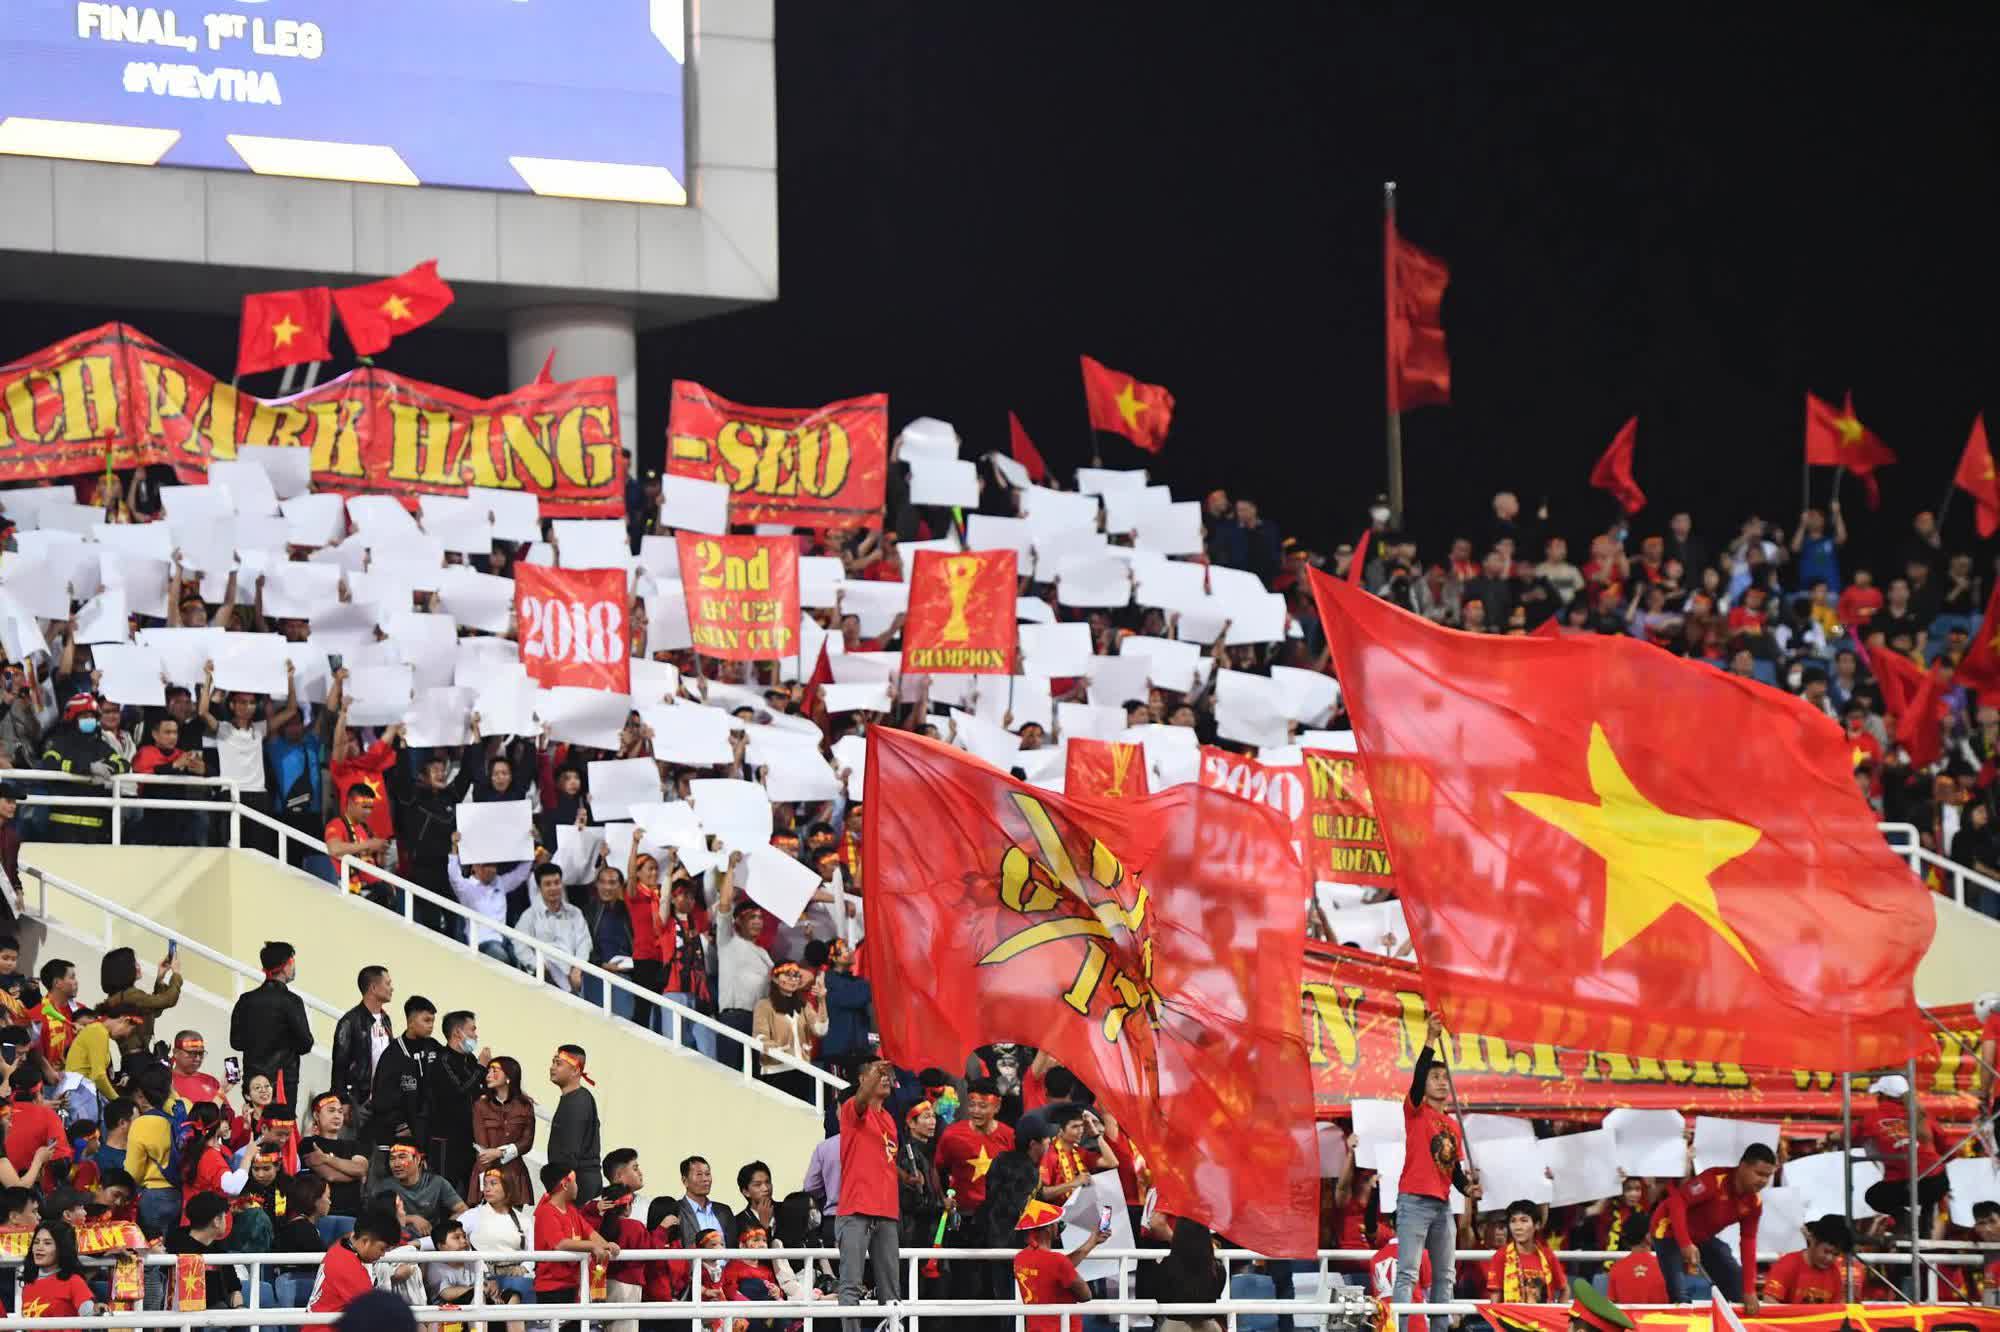 Màn chào cờ đầy xúc động của HLV Park Hang Seo trong trận đấu cuối cùng trên sân Mỹ Đình - Ảnh 8.